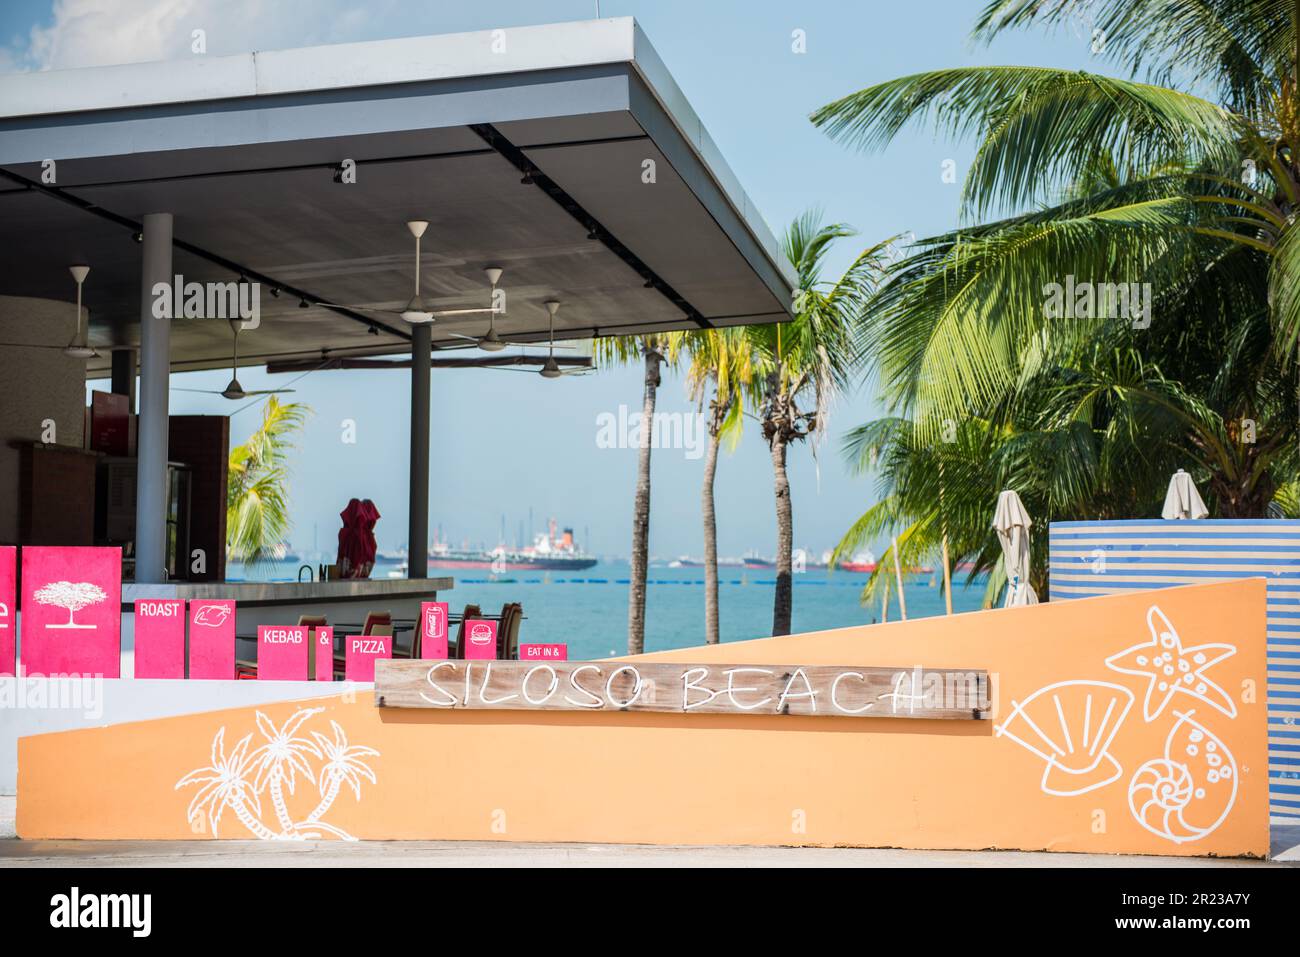 Singapour - 18 octobre 2014 : Siloso Beach est la plage la plus branchée de Singapour, avec ses bars et restaurants les plus branchés de l'île de Sentosa Banque D'Images